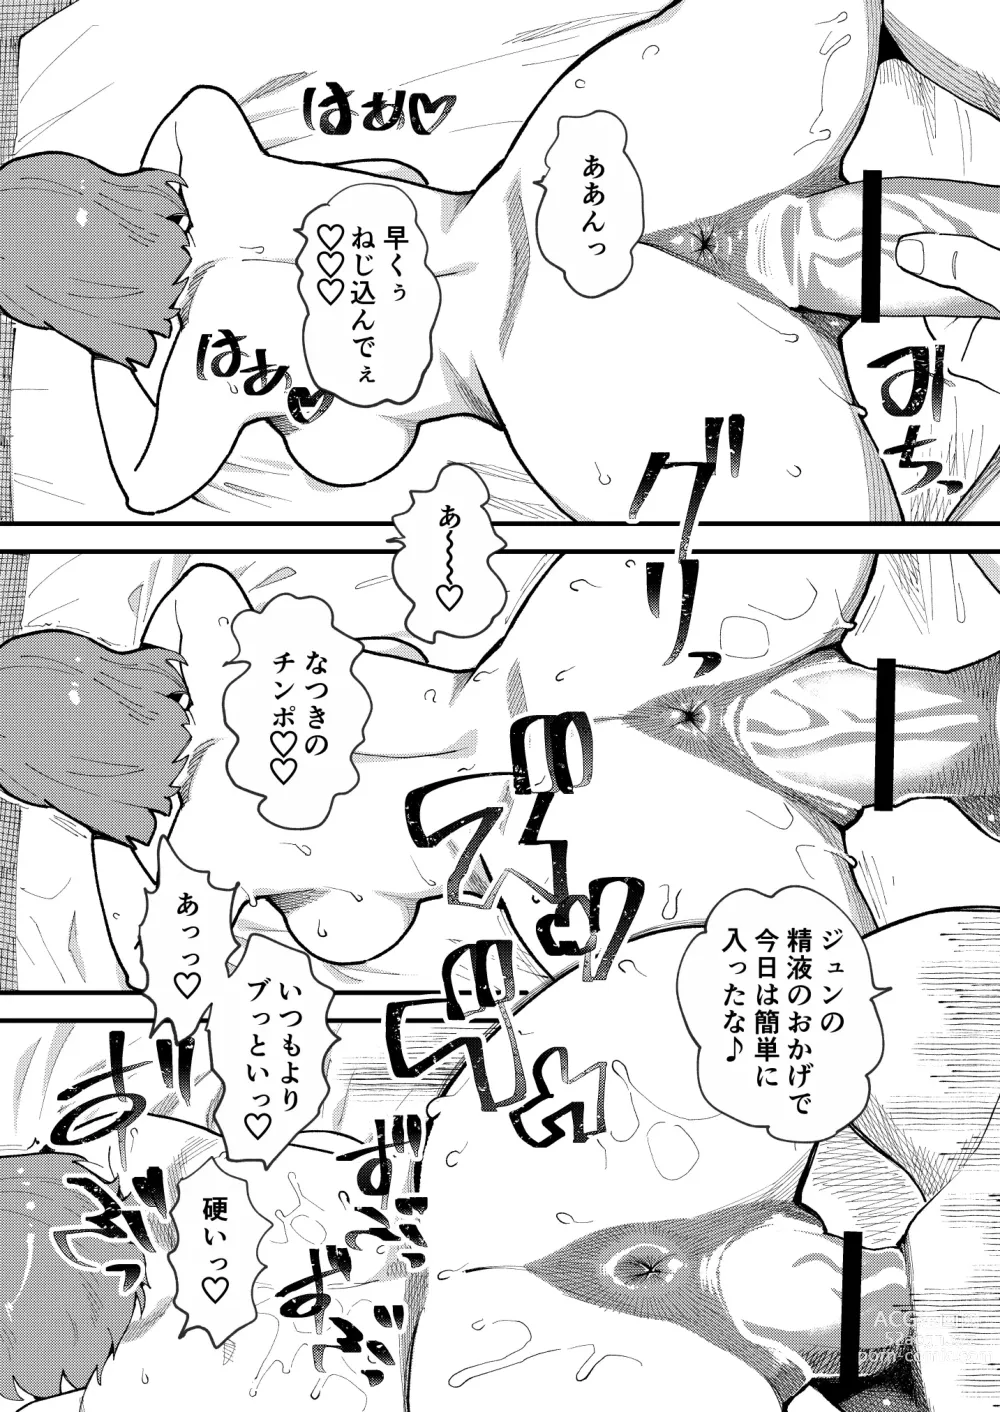 Page 22 of doujinshi Kyouyuu Kanojo